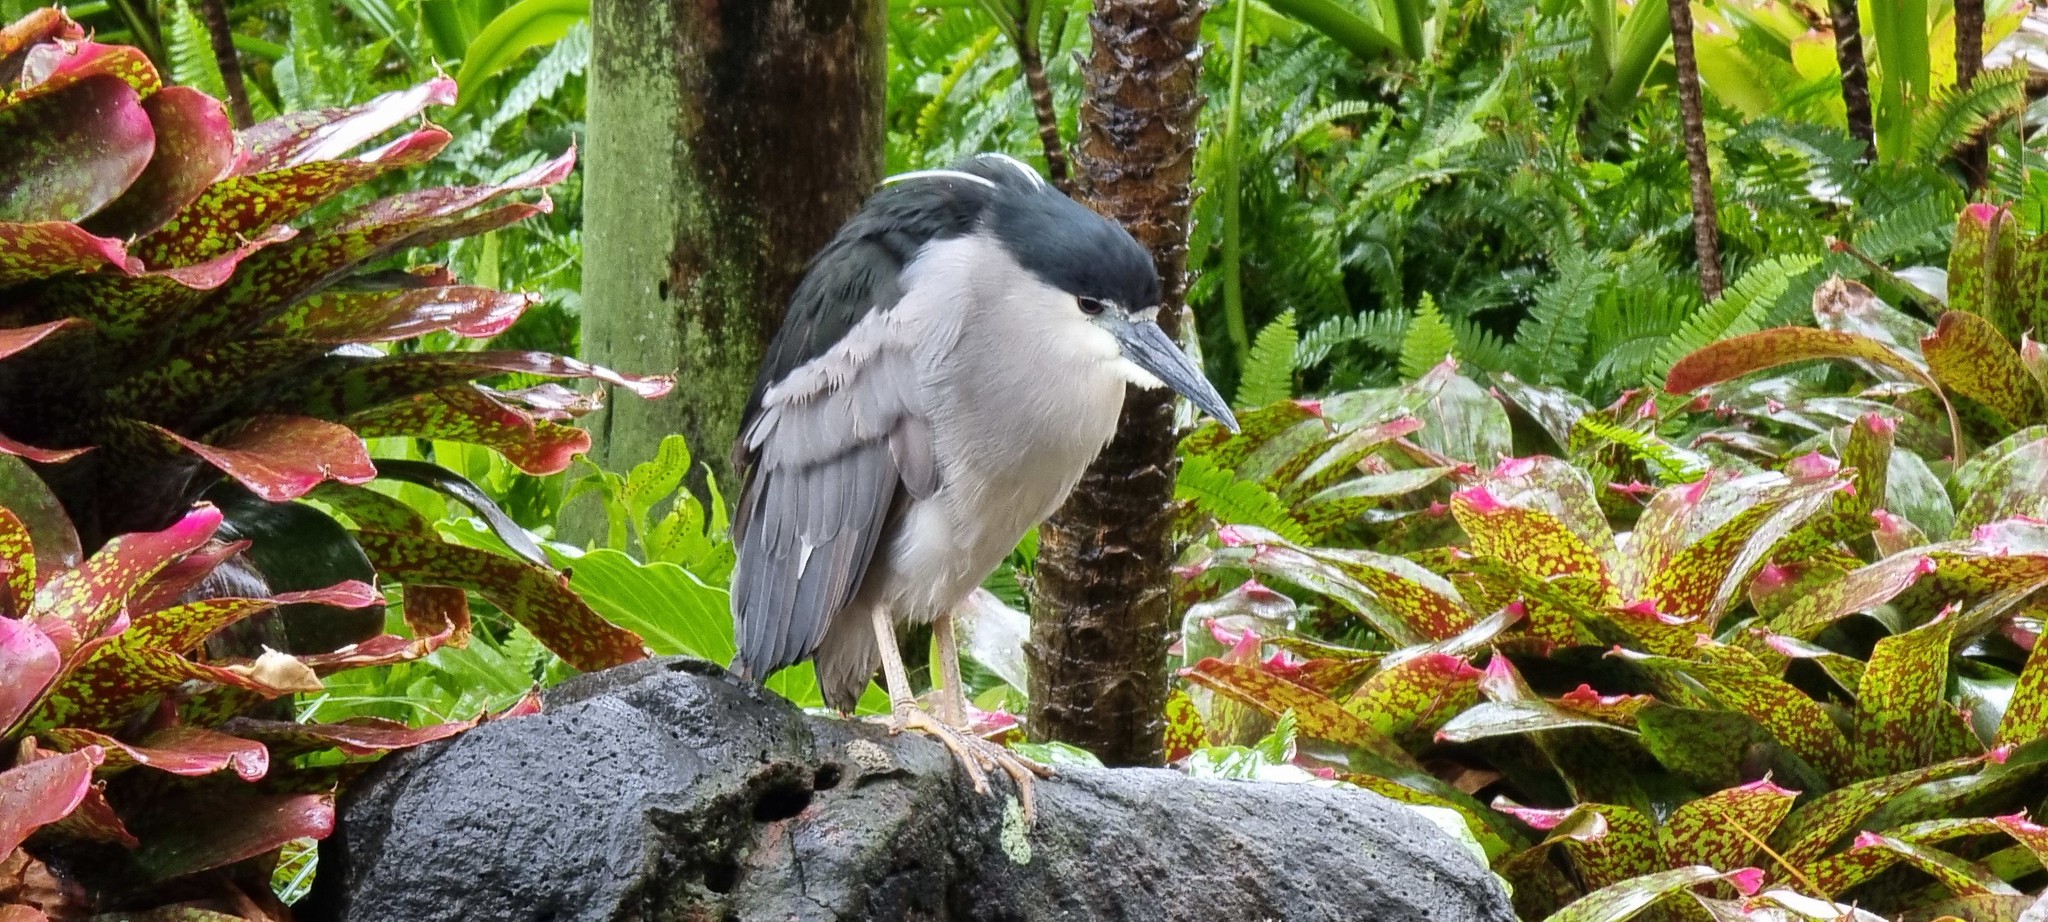 A tropical bird found at the Hilton Hawaiian Village in Waikiki